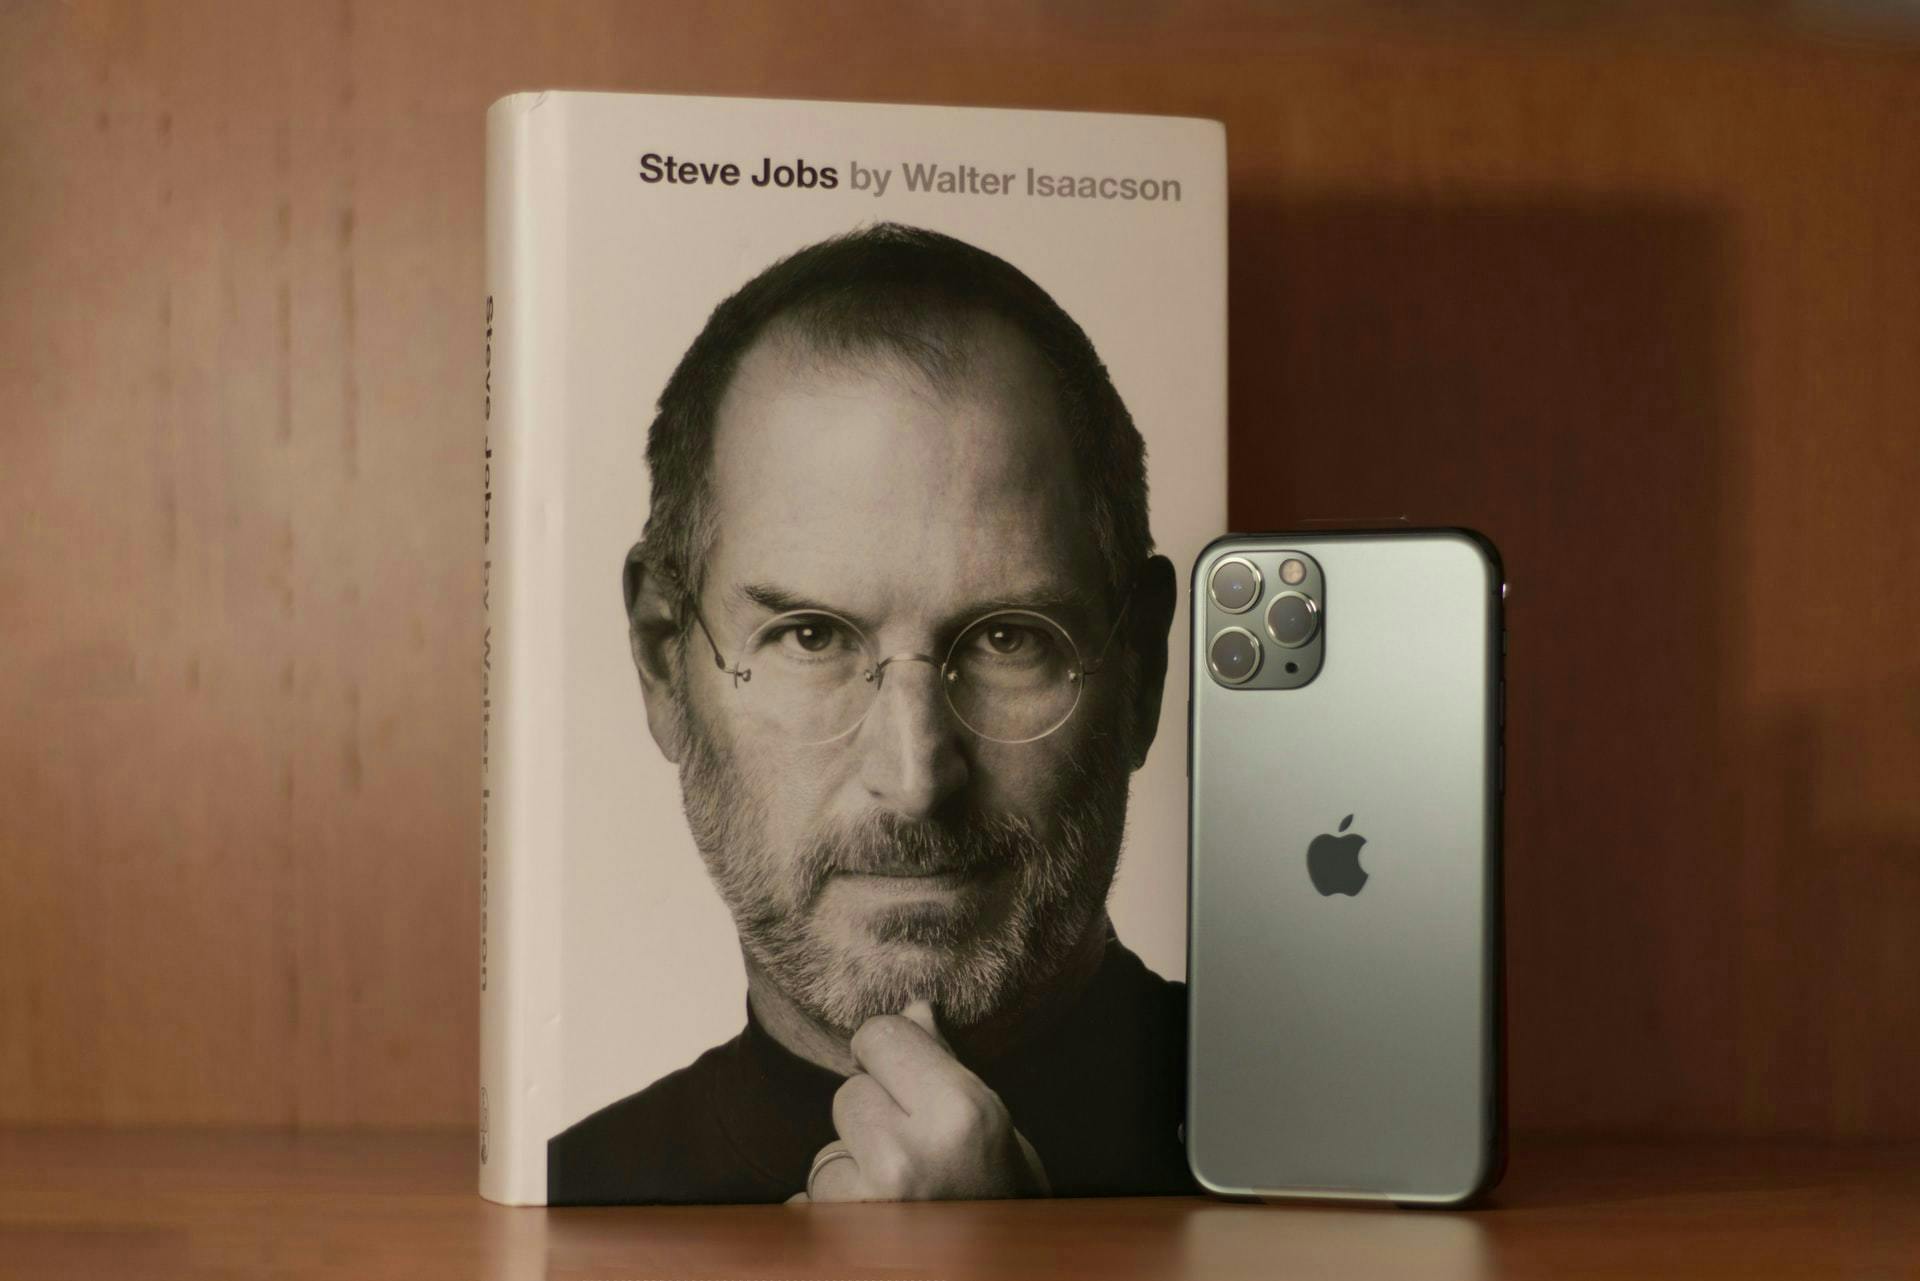 Livro do Steve Jobs